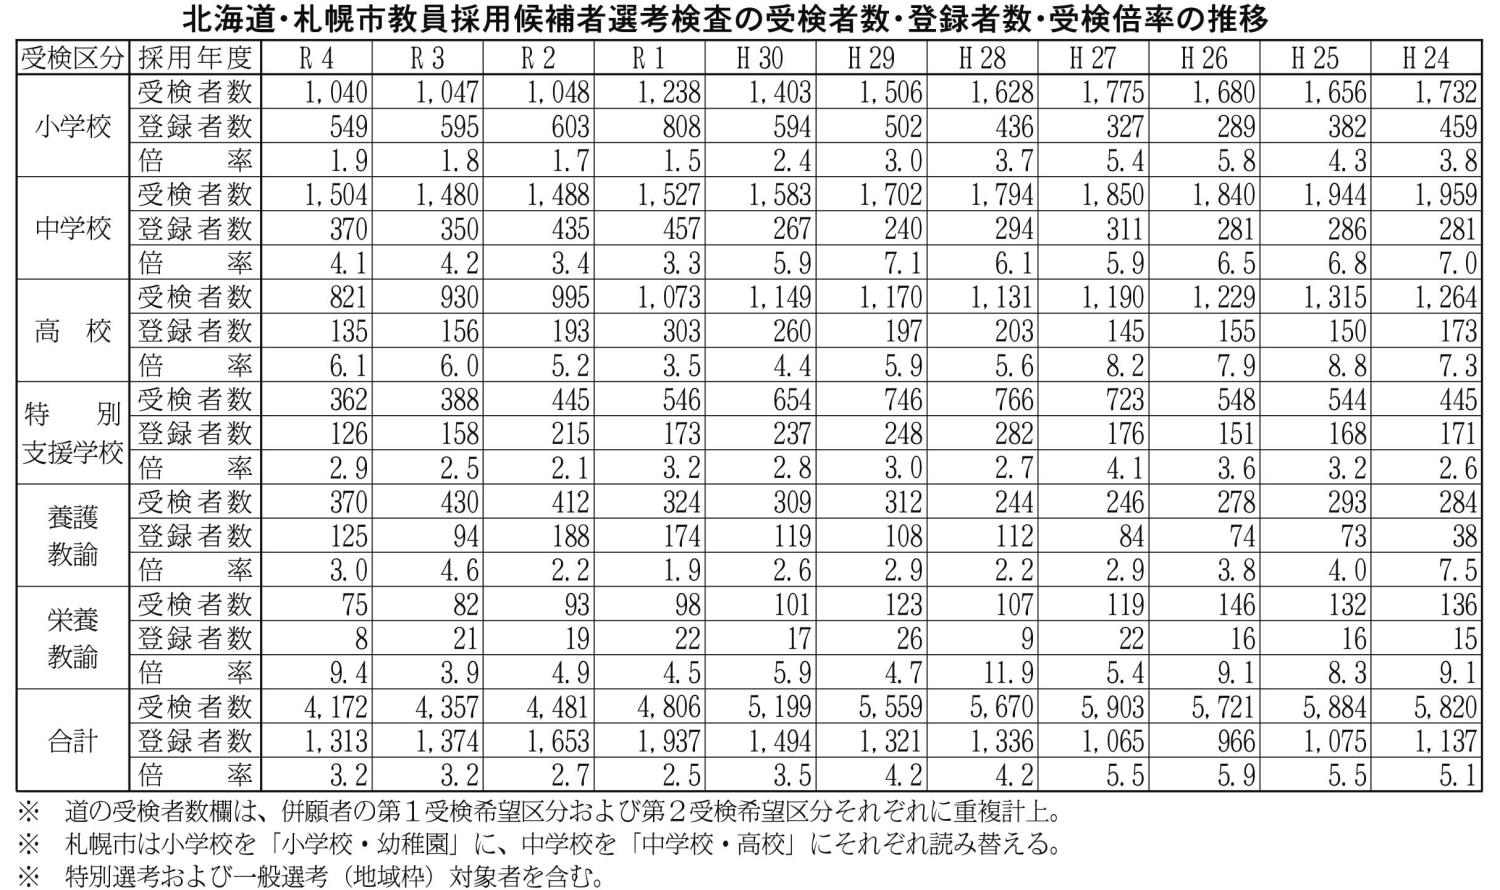 道・札幌市教員採用候補者選考検査の受検者数・登録者数・受検倍率の推移